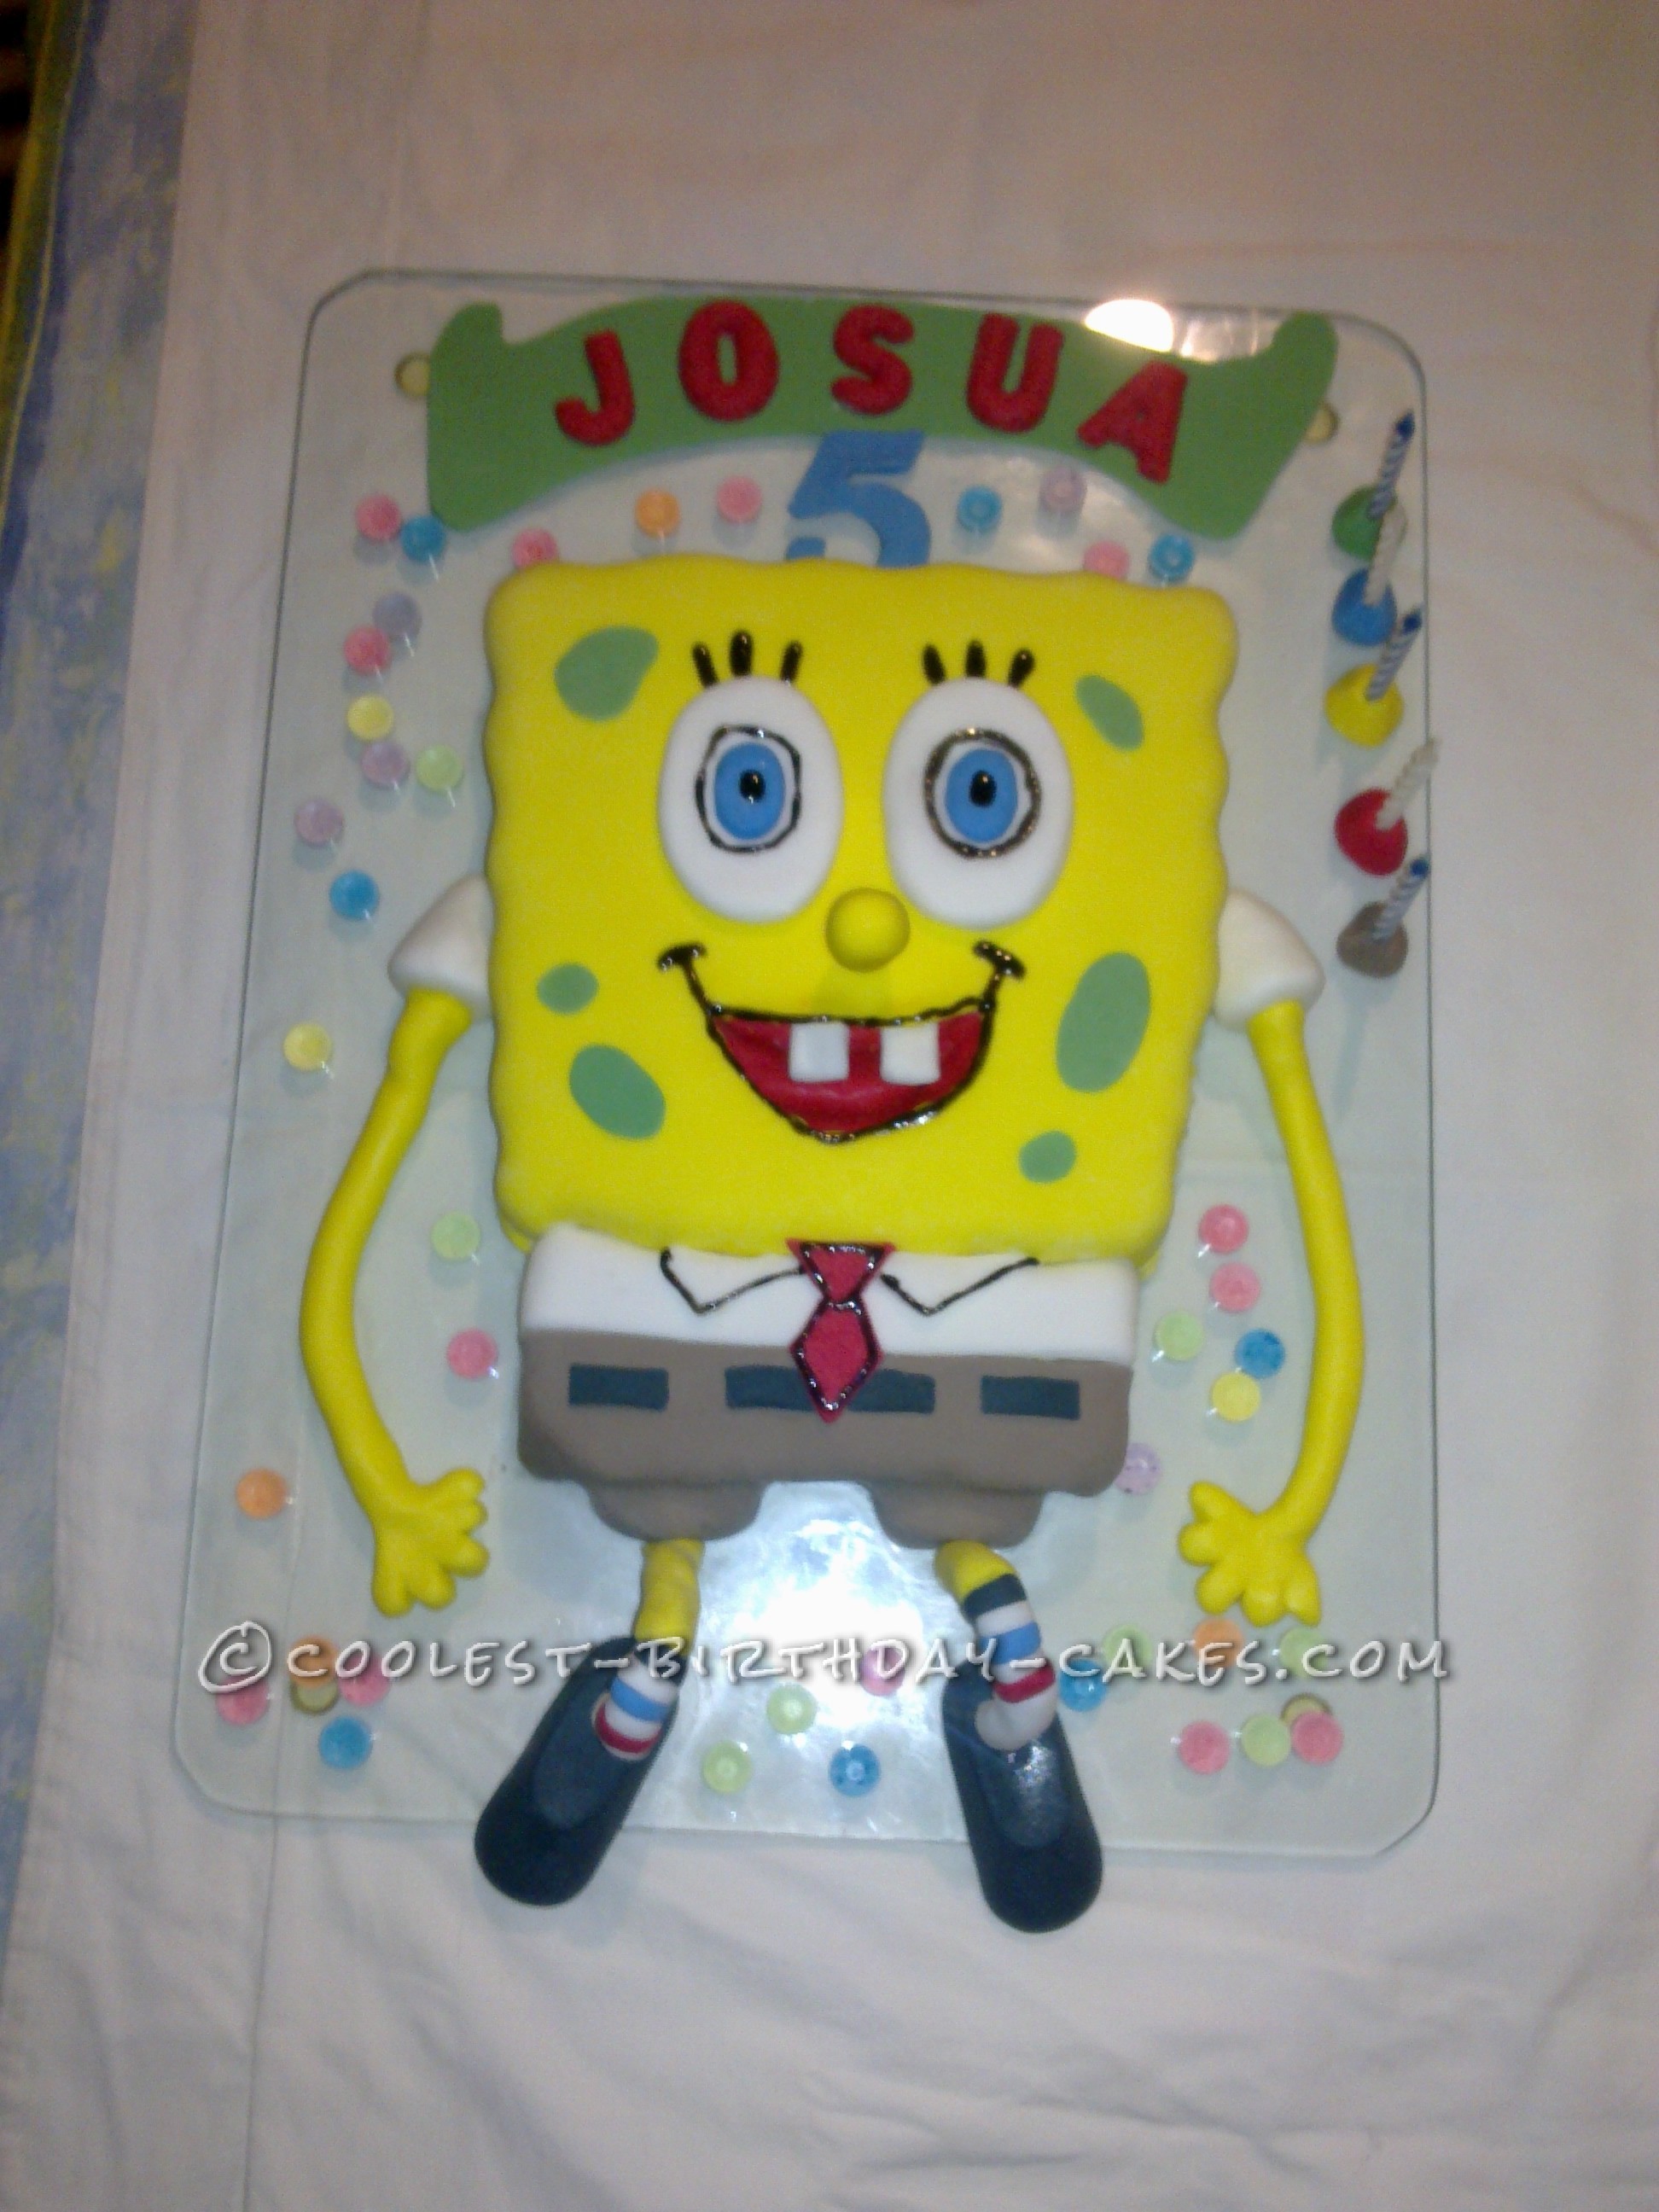 Coolest SpongBob Birthday Cakes